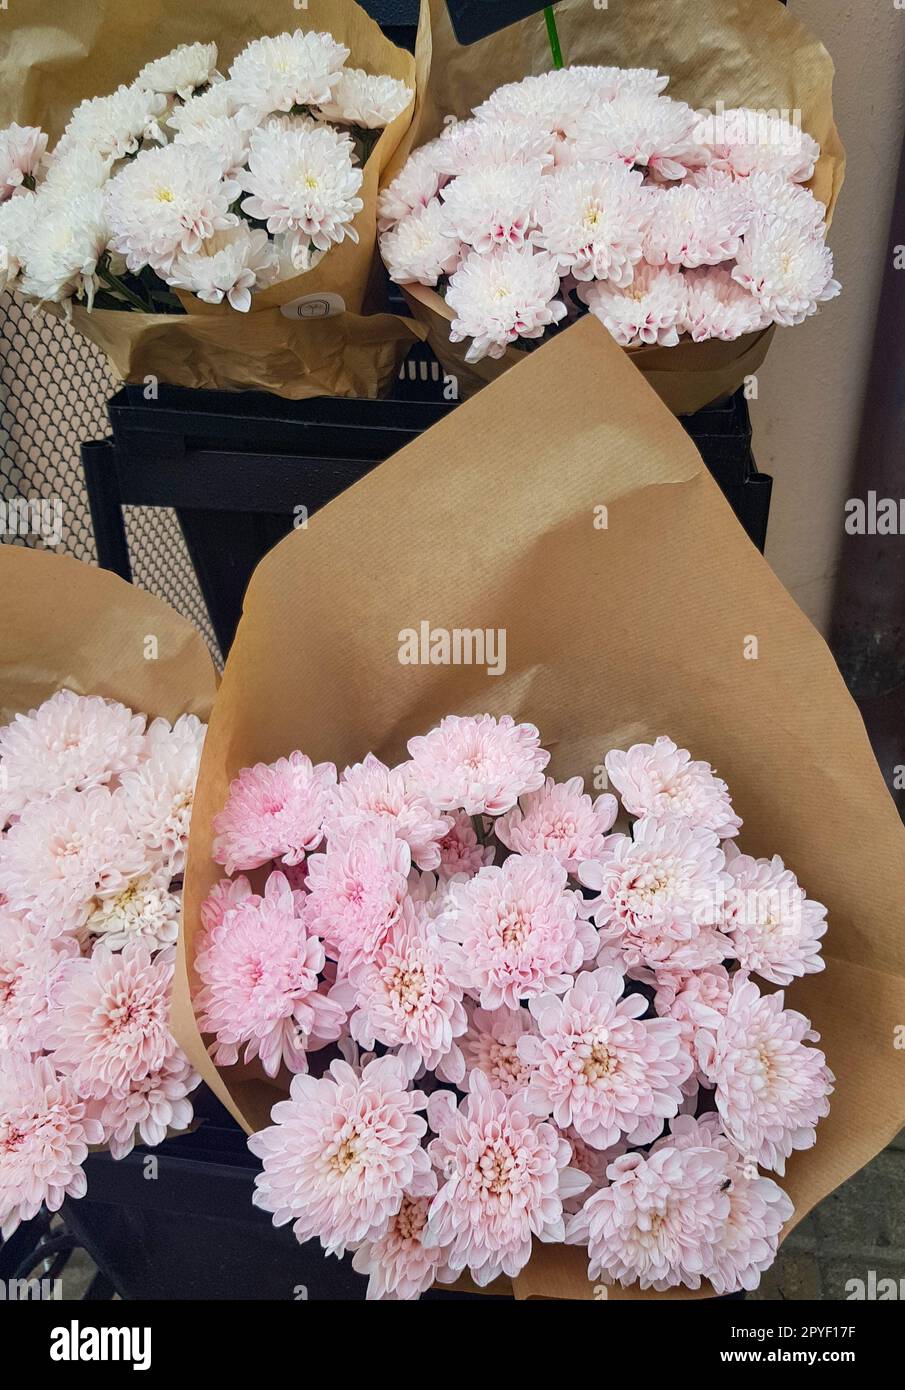 Beaux bouquets de chrysanthèmes en papier kraft brun, sur le comptoir d'un fleuriste, vertical Banque D'Images